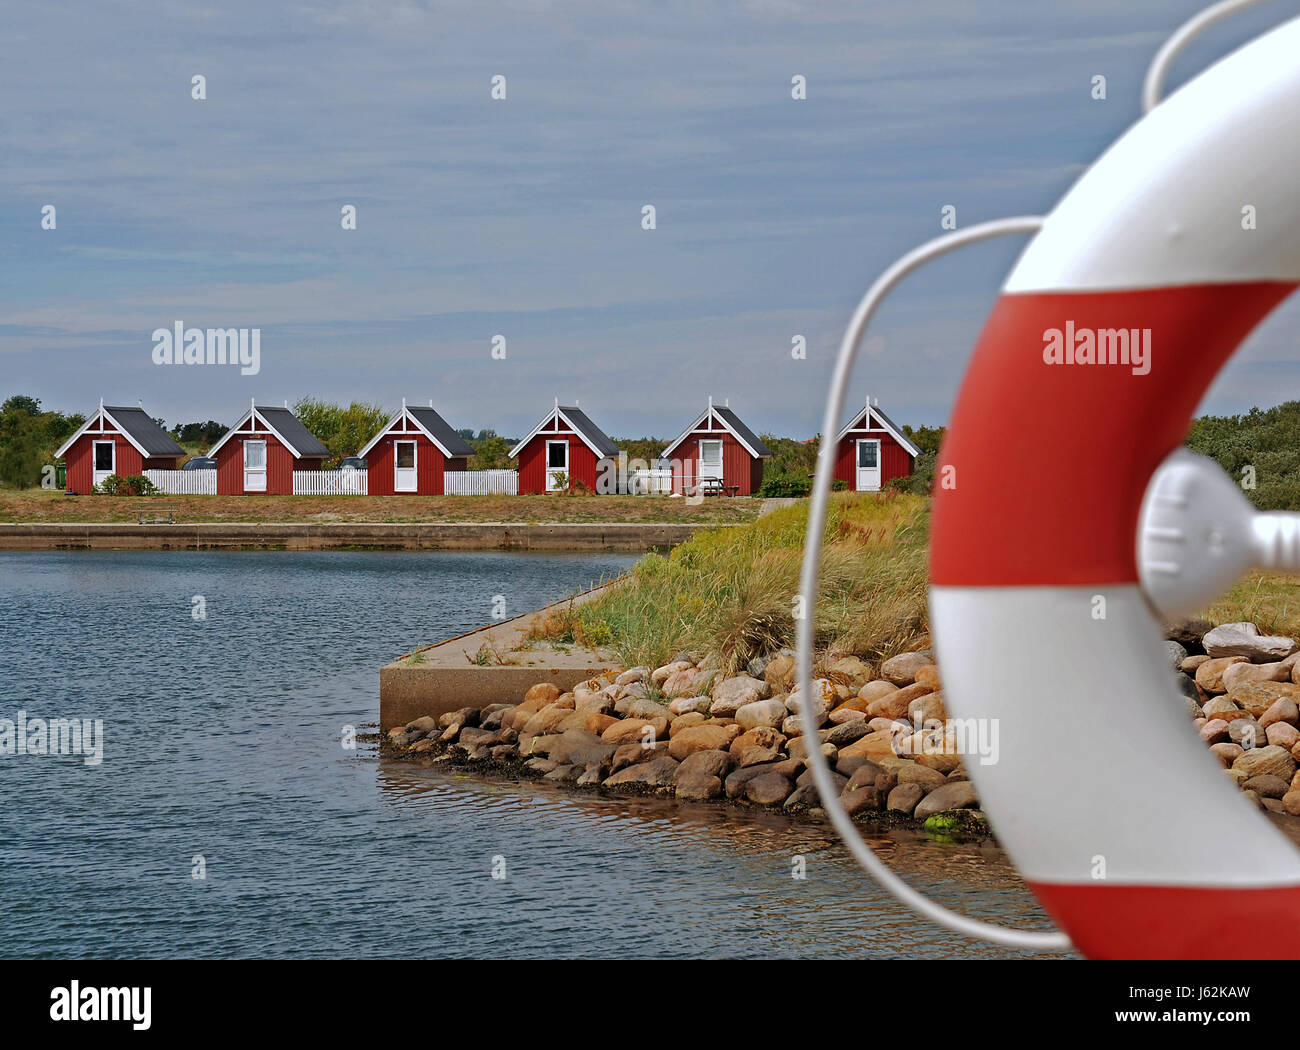 harbor houses in denmark Stock Photo